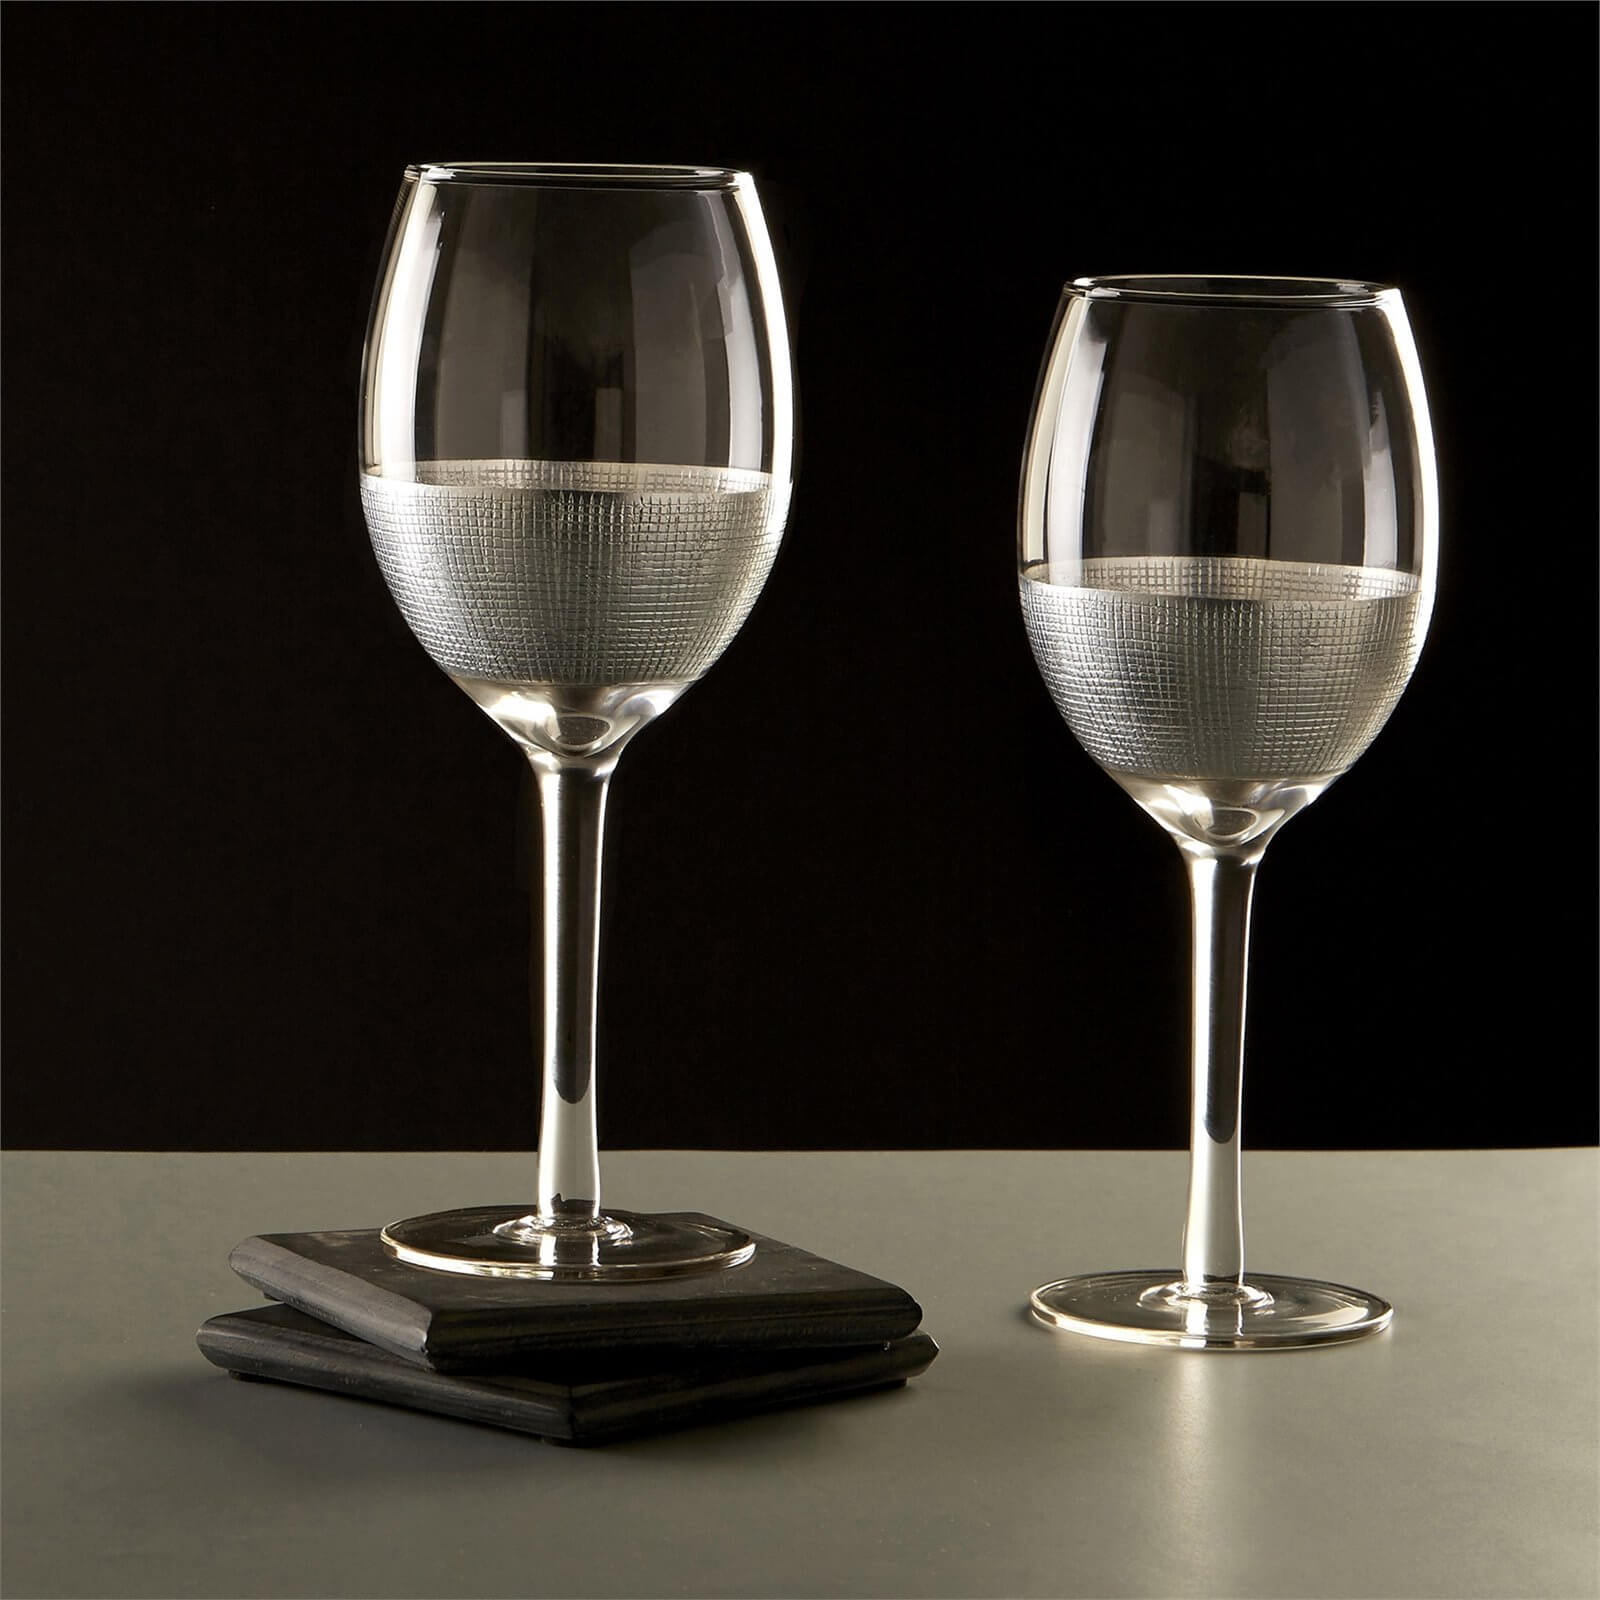 Apollo Small Wine Glasses - Set of 4